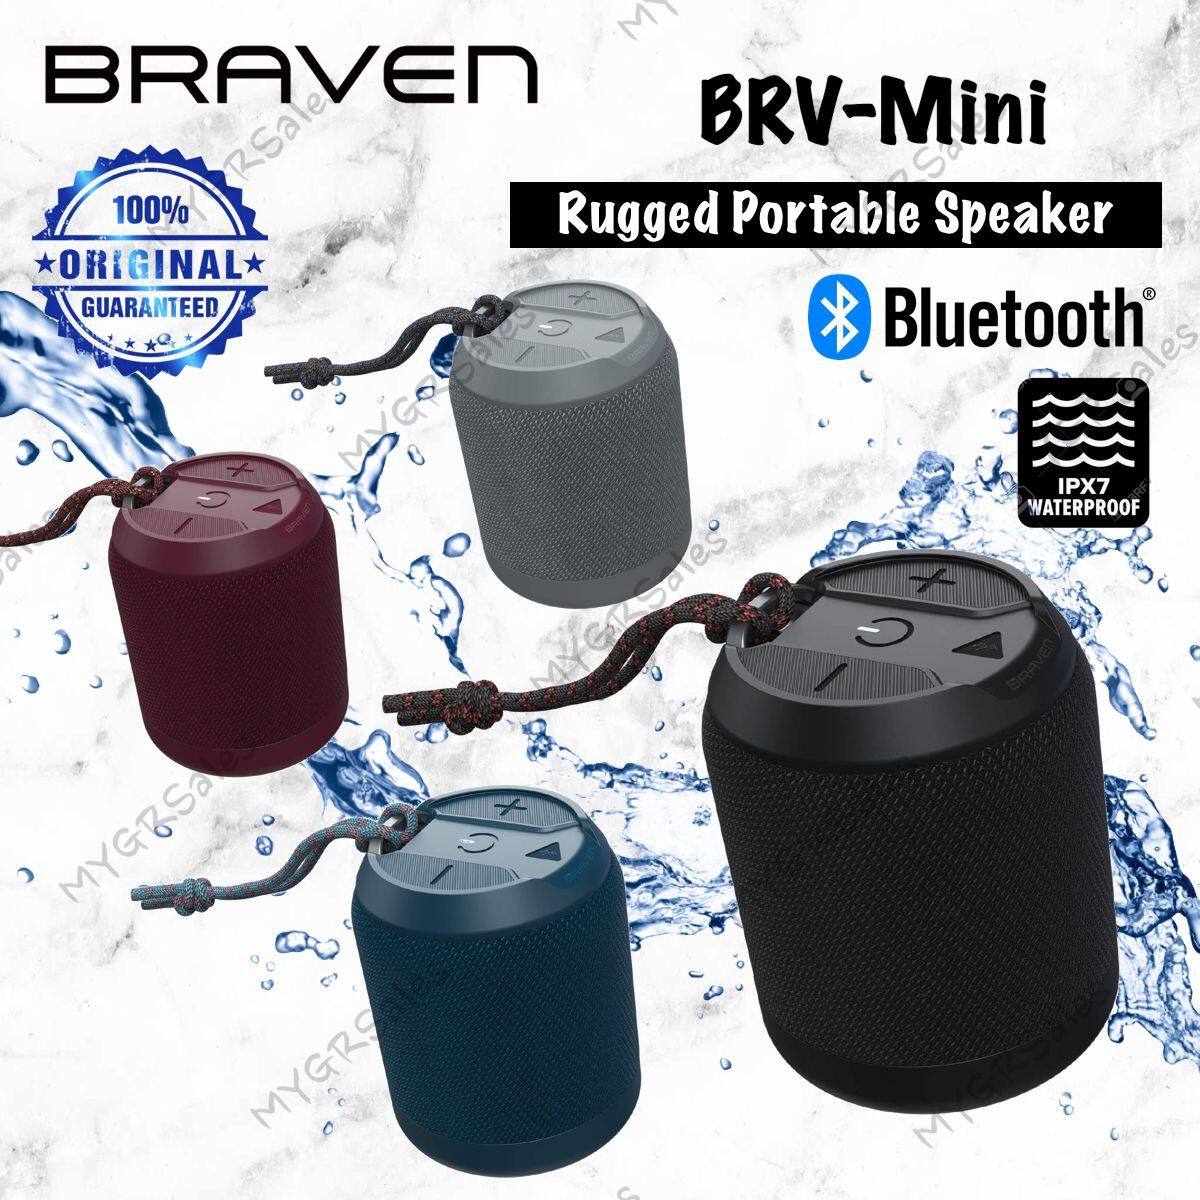 Braven BRV-Mini Rugged Portable Wireless Bluetooth Speaker-Blue-Mint  WATERPROOF